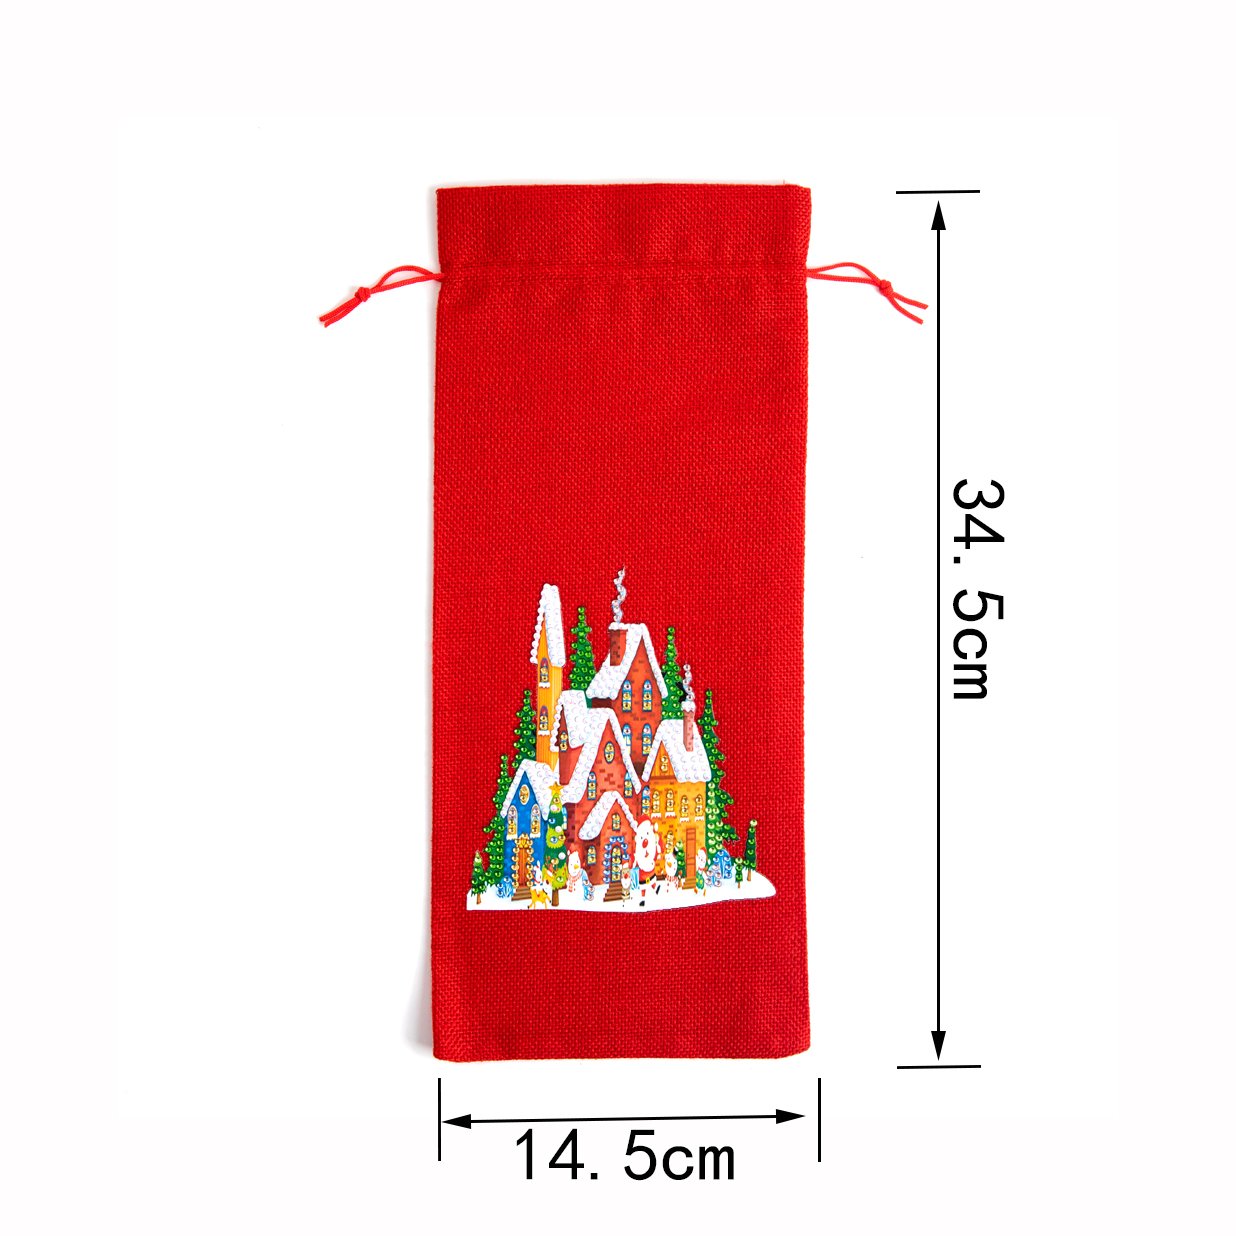 DIY Diamond Christmas Decoration | Christmas house | Red Wine Gift Bag